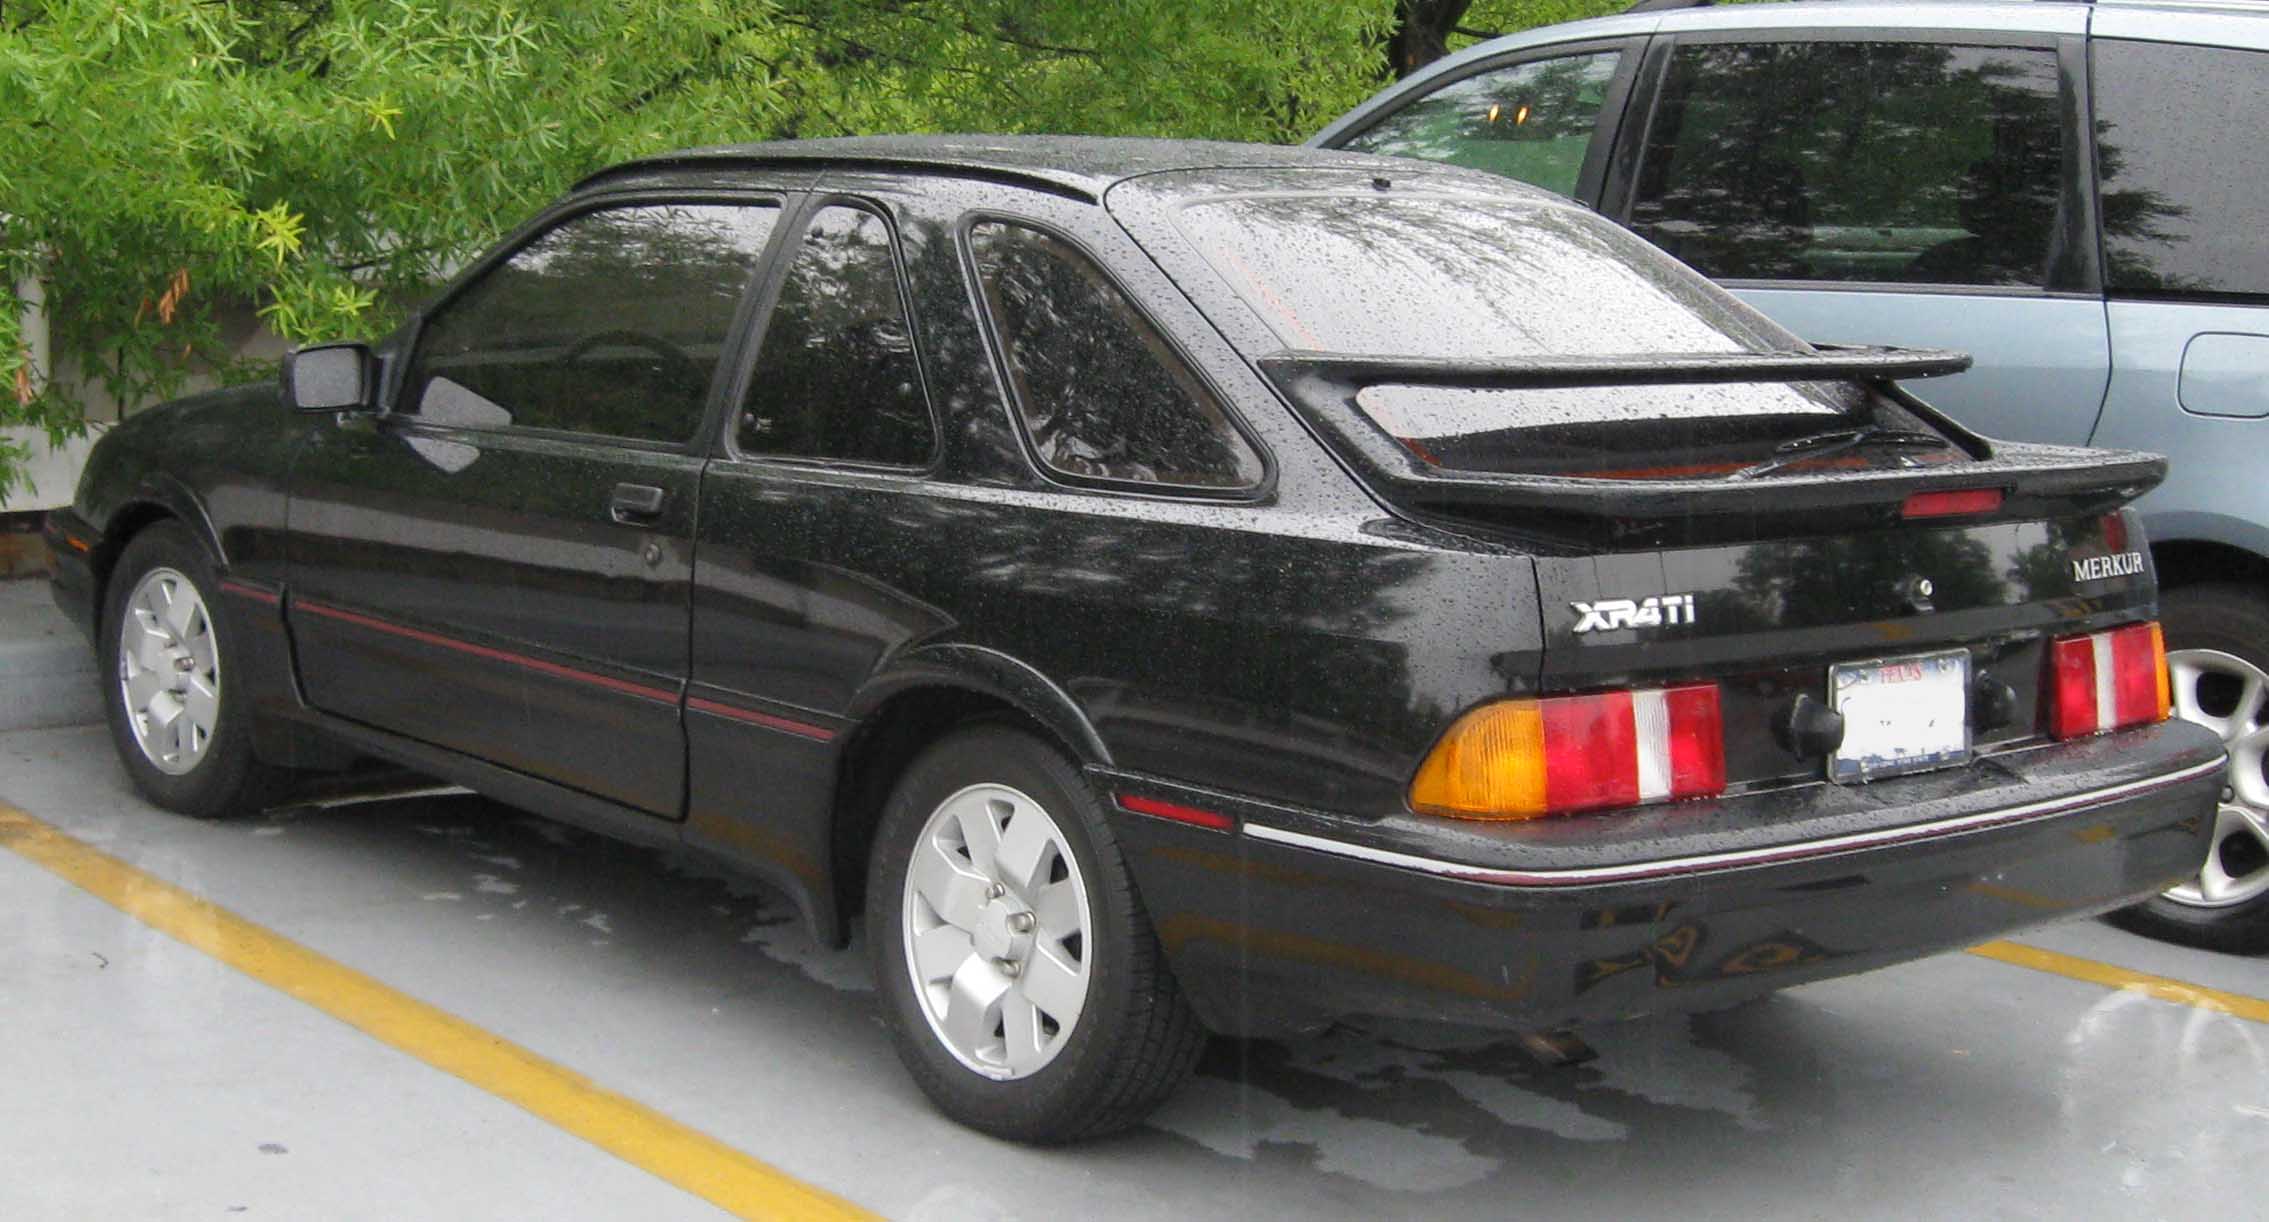 1985 Merkur XR4Ti